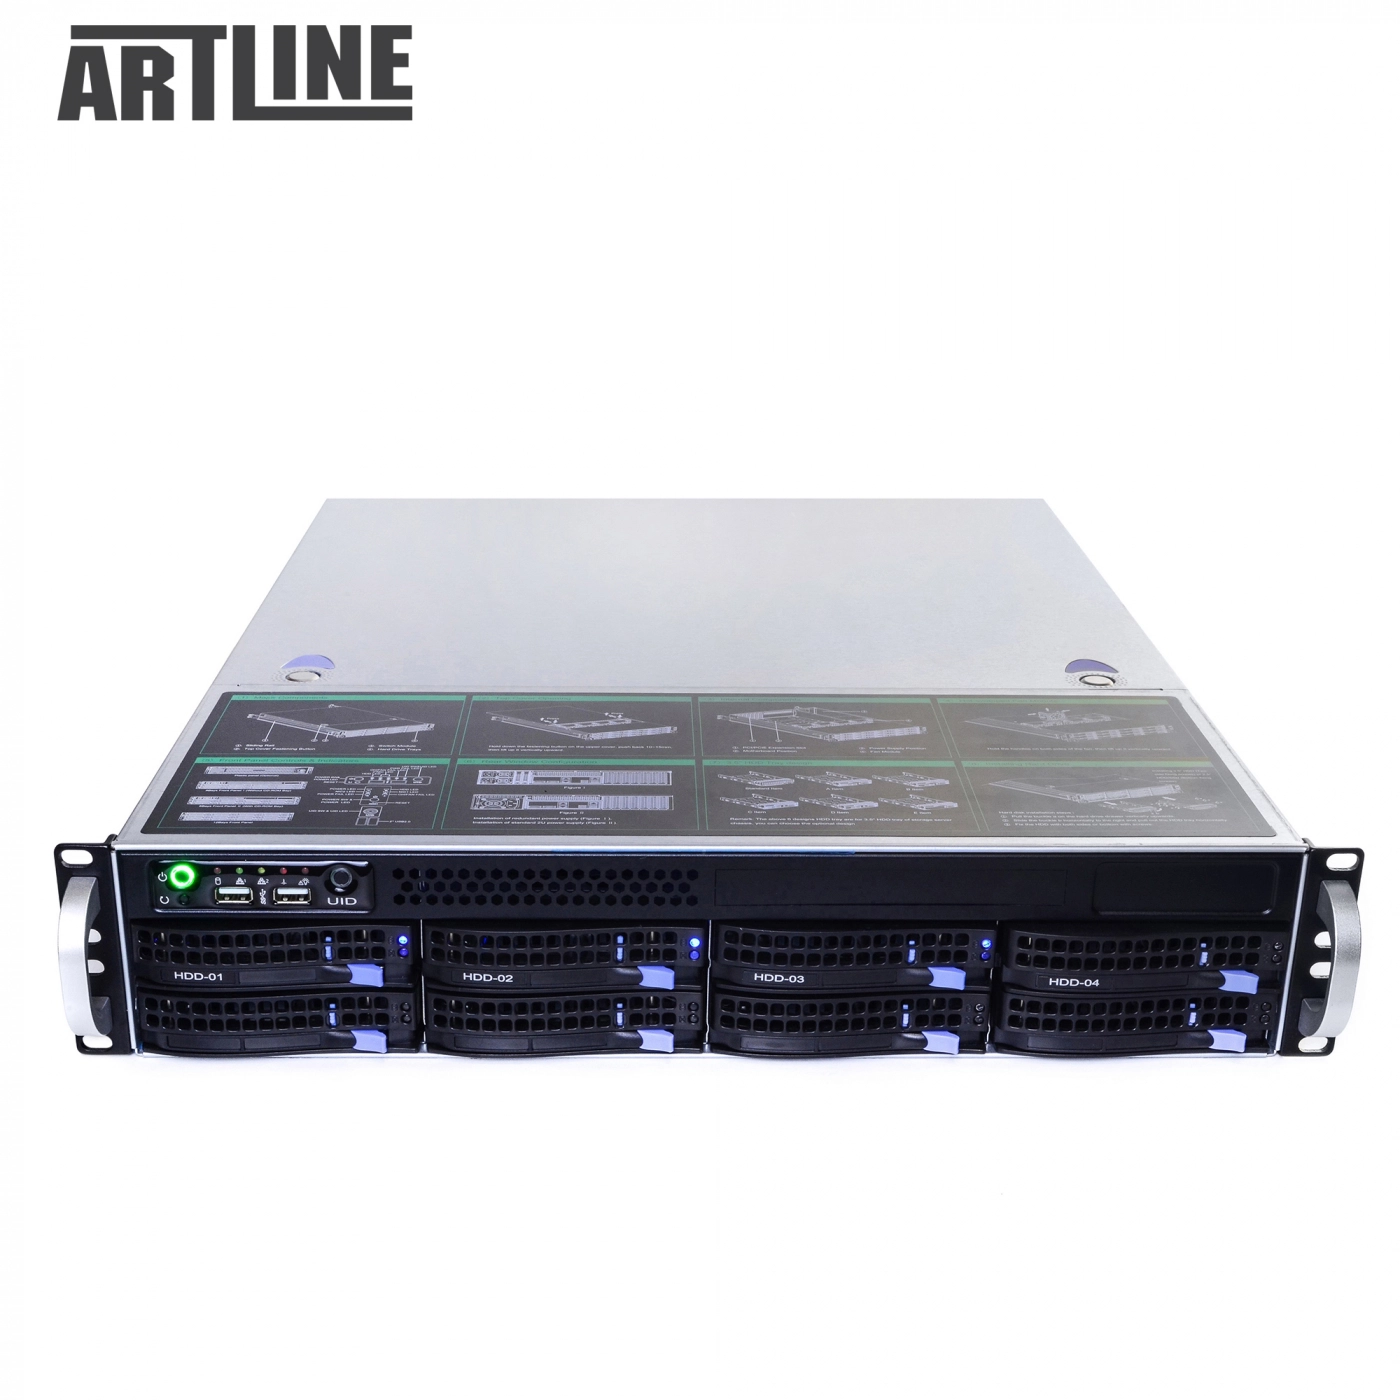 Купить Сервер ARTLINE Business R35v06 - фото 10